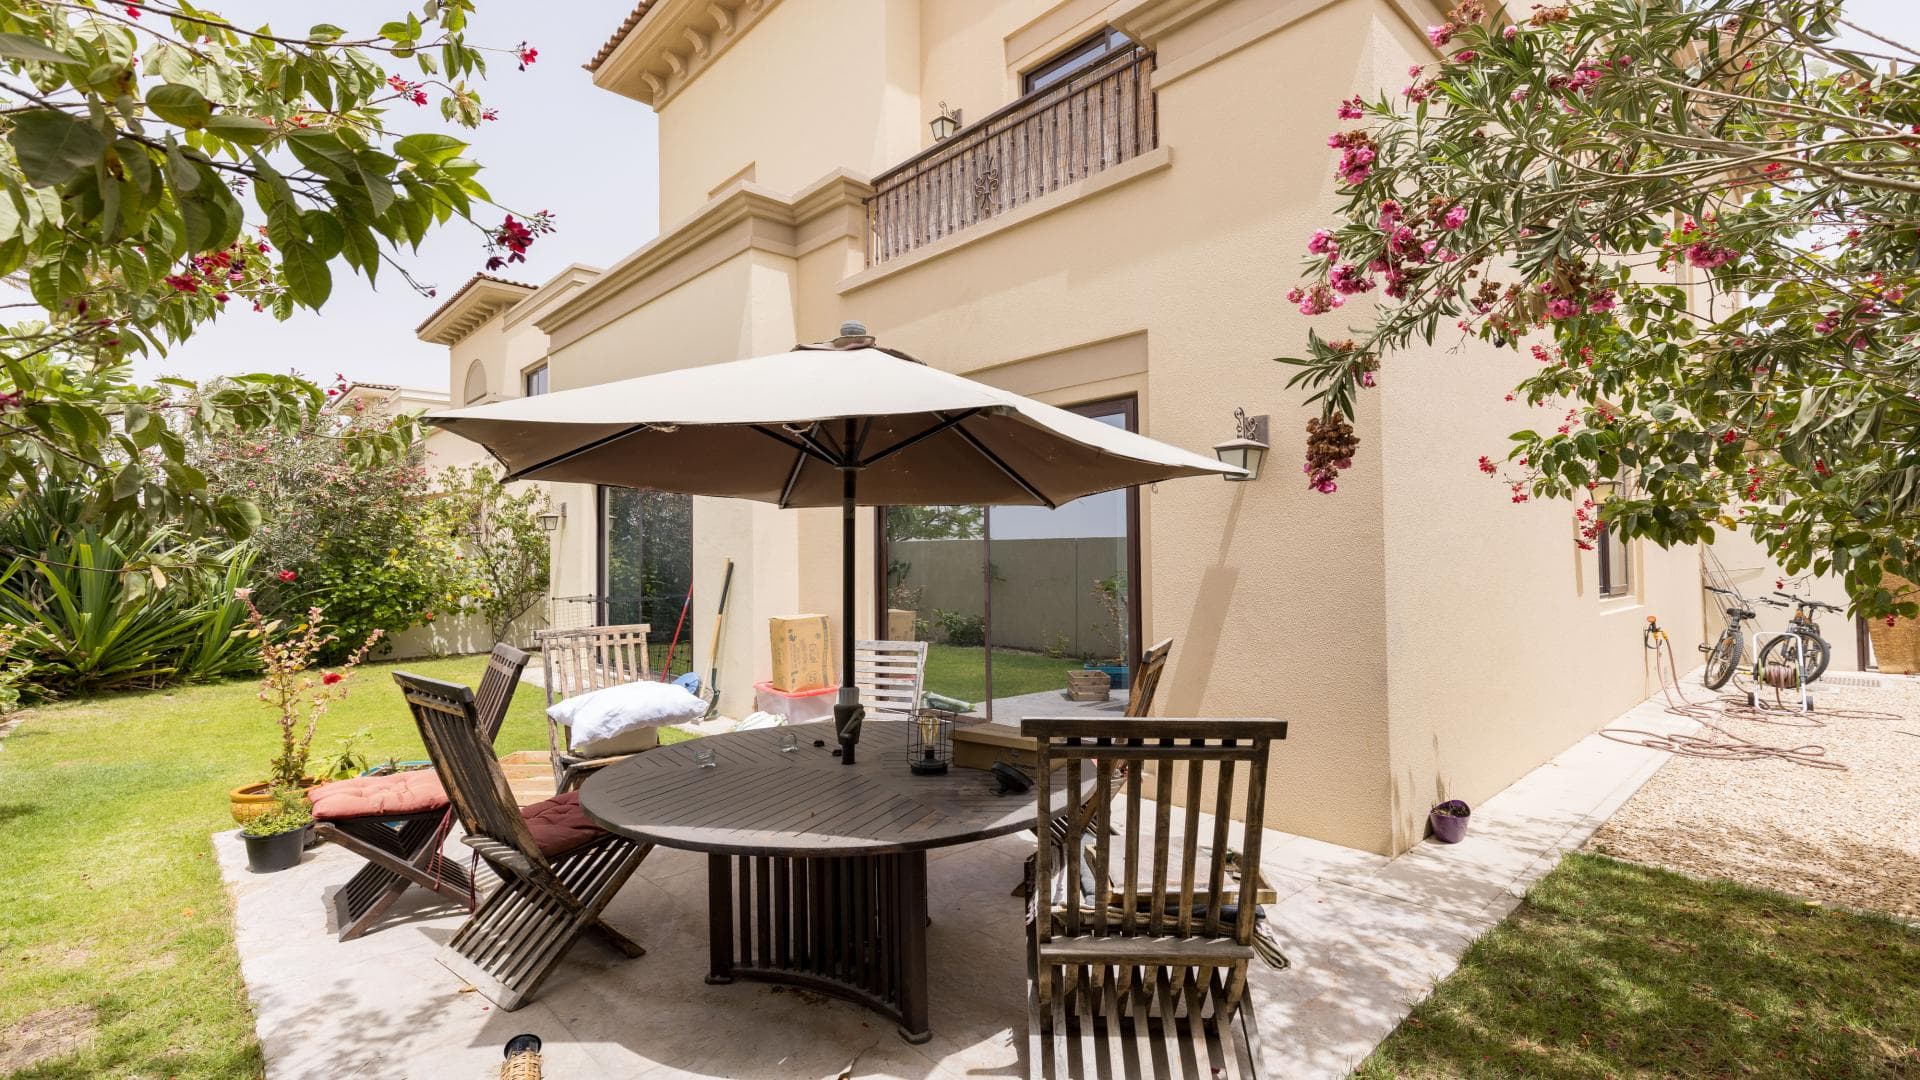 5 Bedroom Villa For Rent Palma Lp14286 1bd6d22942516600.jpg